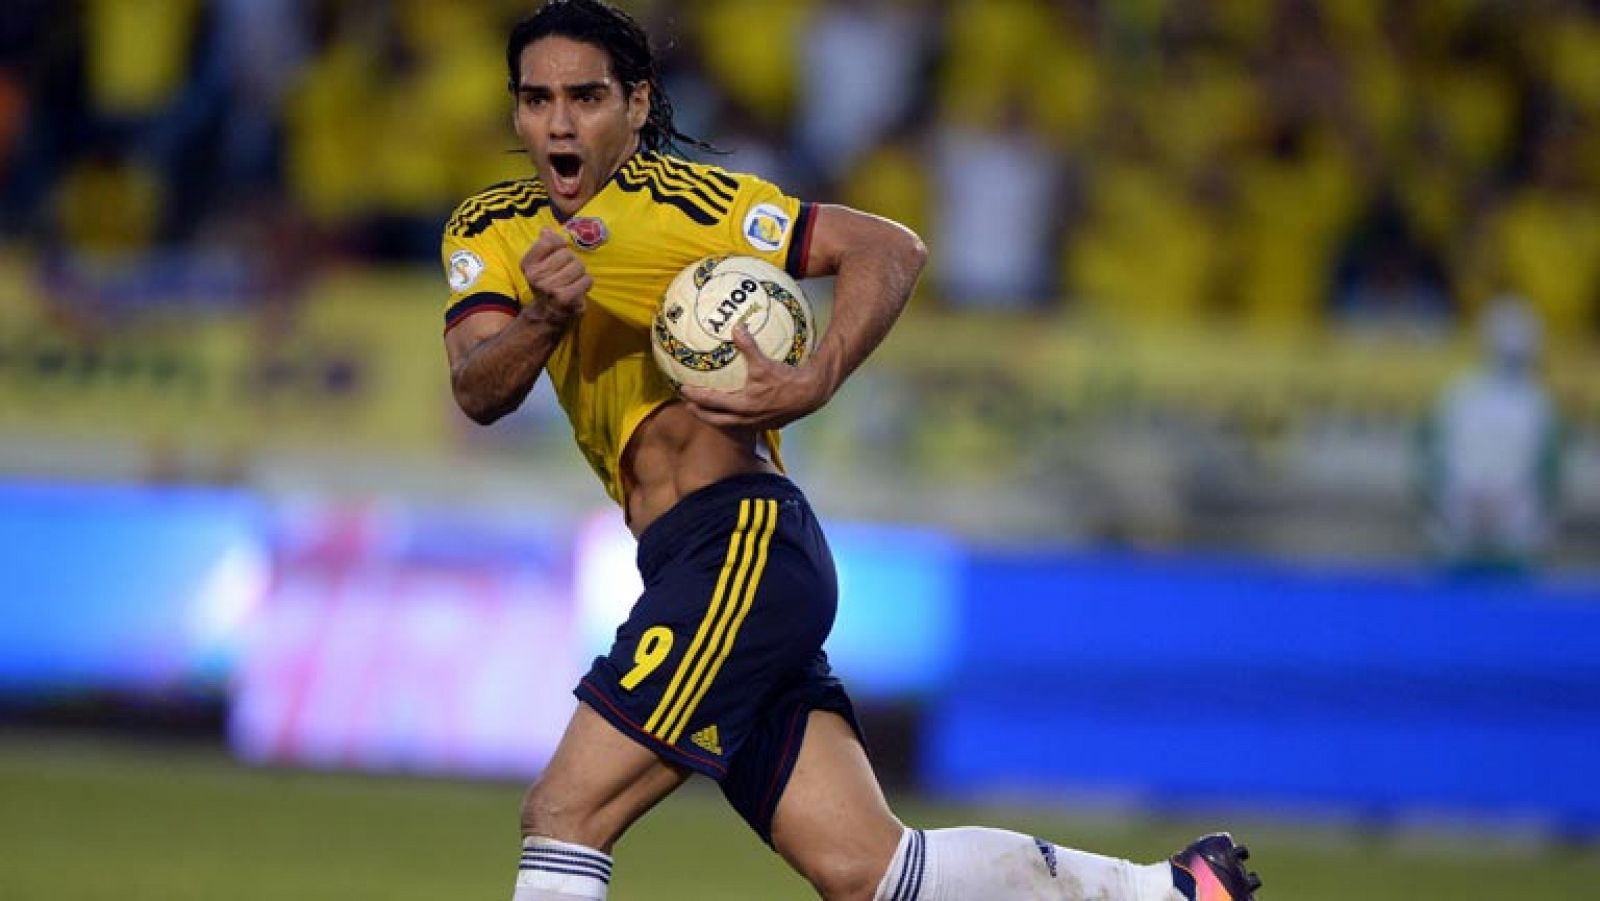 La selección colombiana se ha clasificado matemáticamente para el Mundial de Brasil 2014 tras empatar con Chile (3-3) en un partido en el que los cafeteros se fueron a los vestuarios con el resultado parcial de (0-3) y que remontaron gracias a dos goles de Radamel Falcao en los últimos minutos.